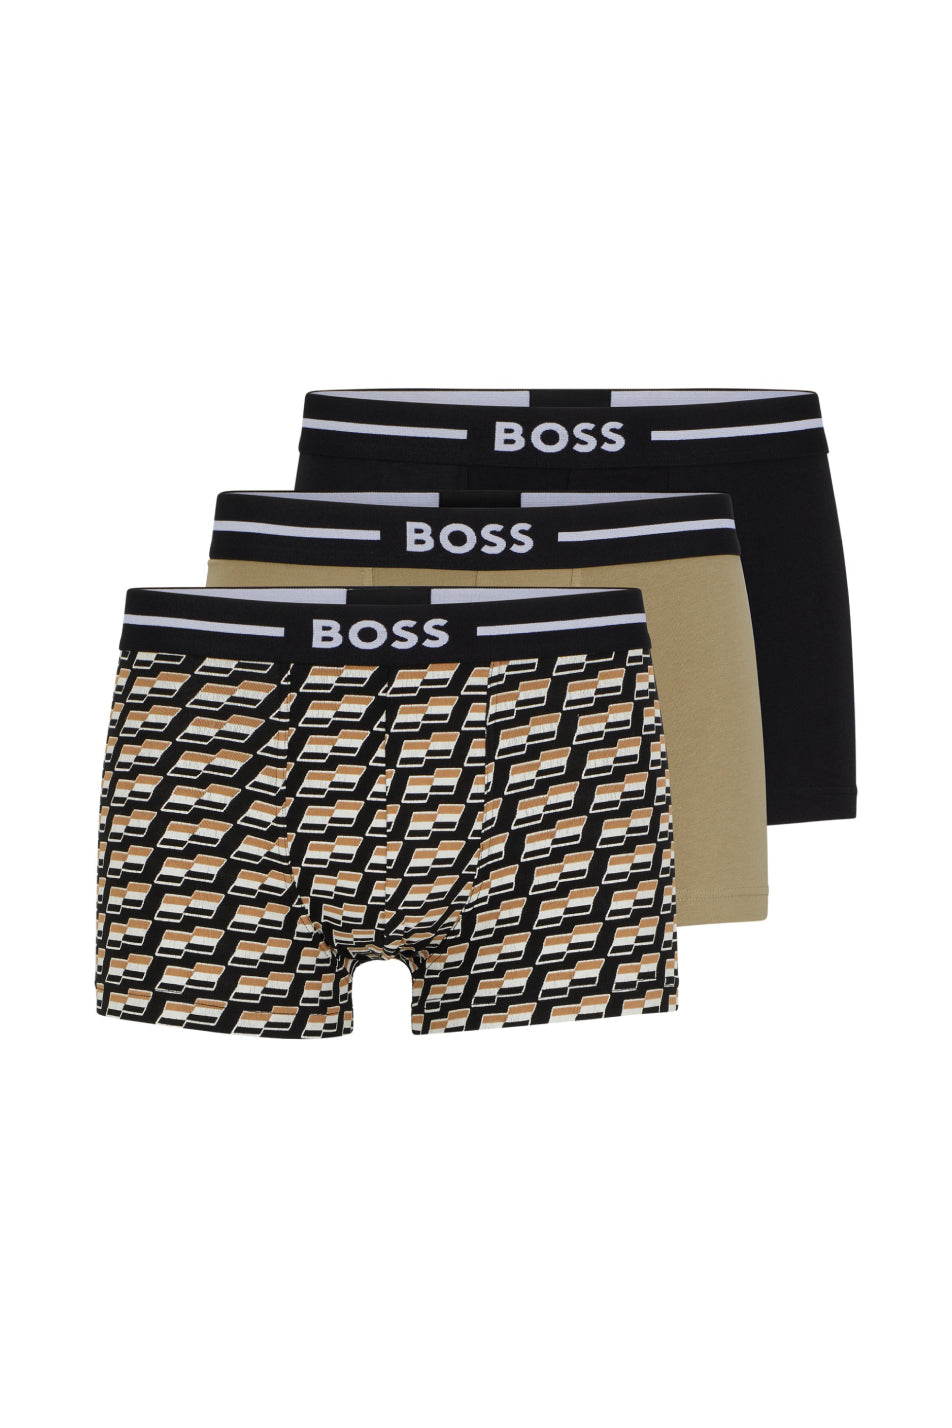 BOSS 3 Pack Men's Bold Design Trunk